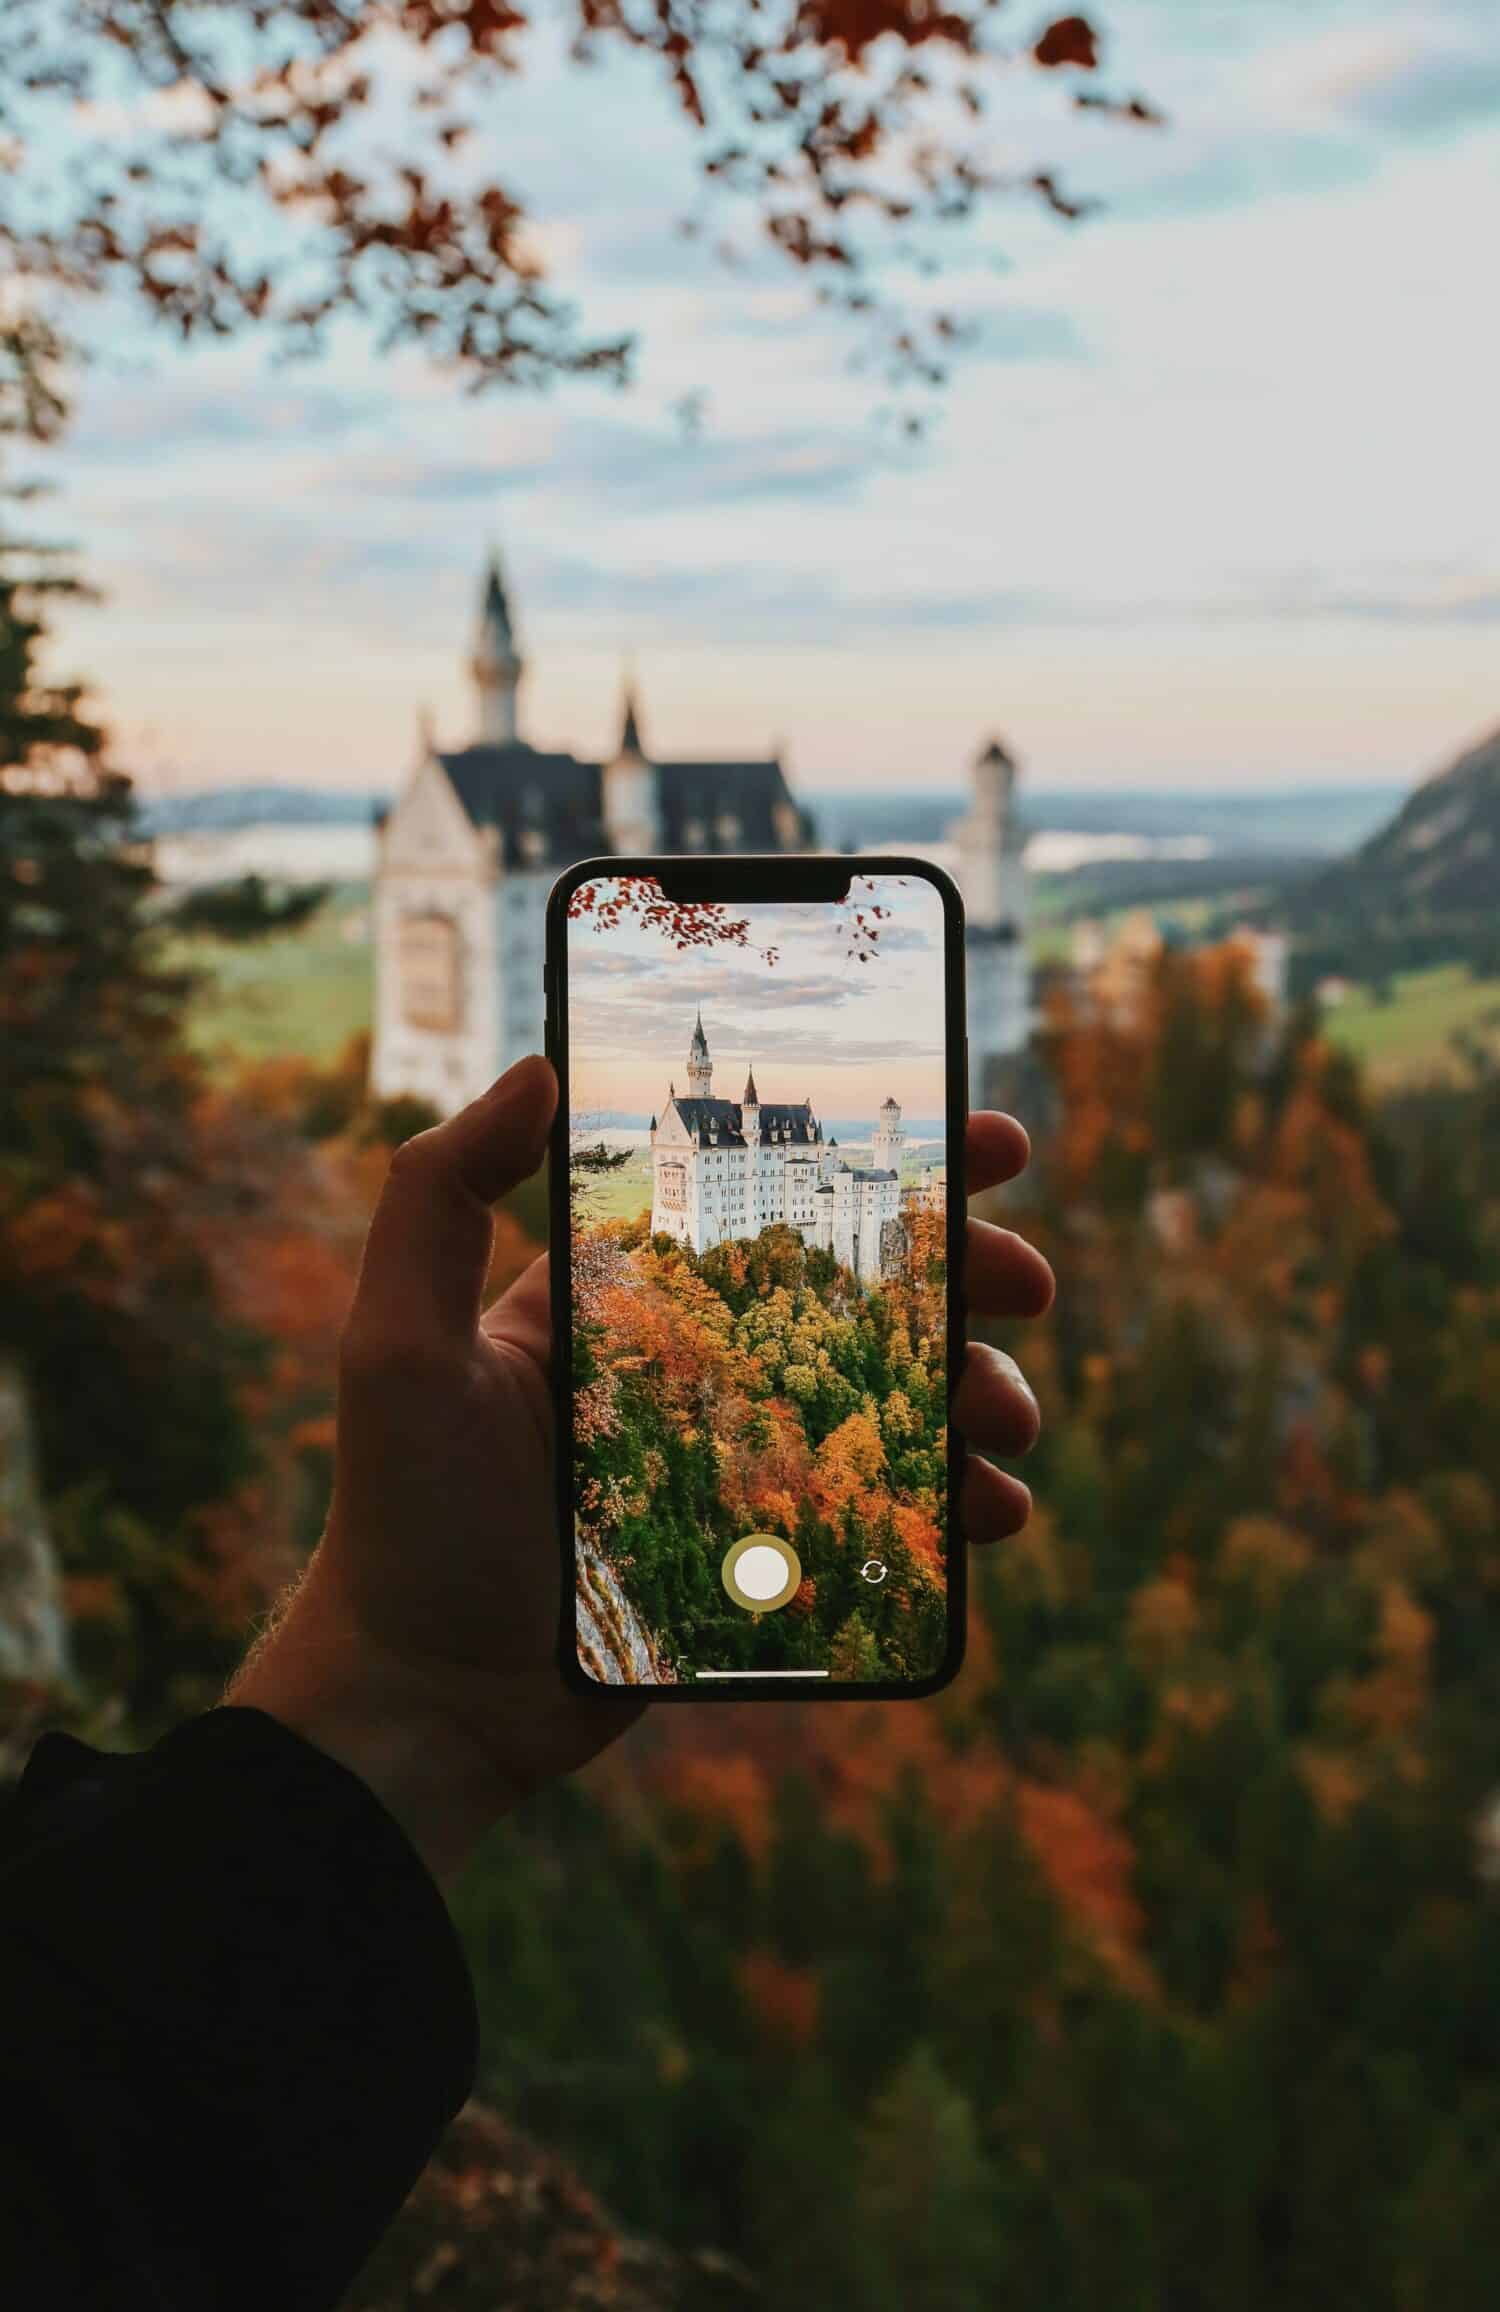 mão branca adulta segurando um celular para tirar foto do Castelo de Neuschwanstein ao fundo, com várias árvores e vegetações em tons marrom e laranja